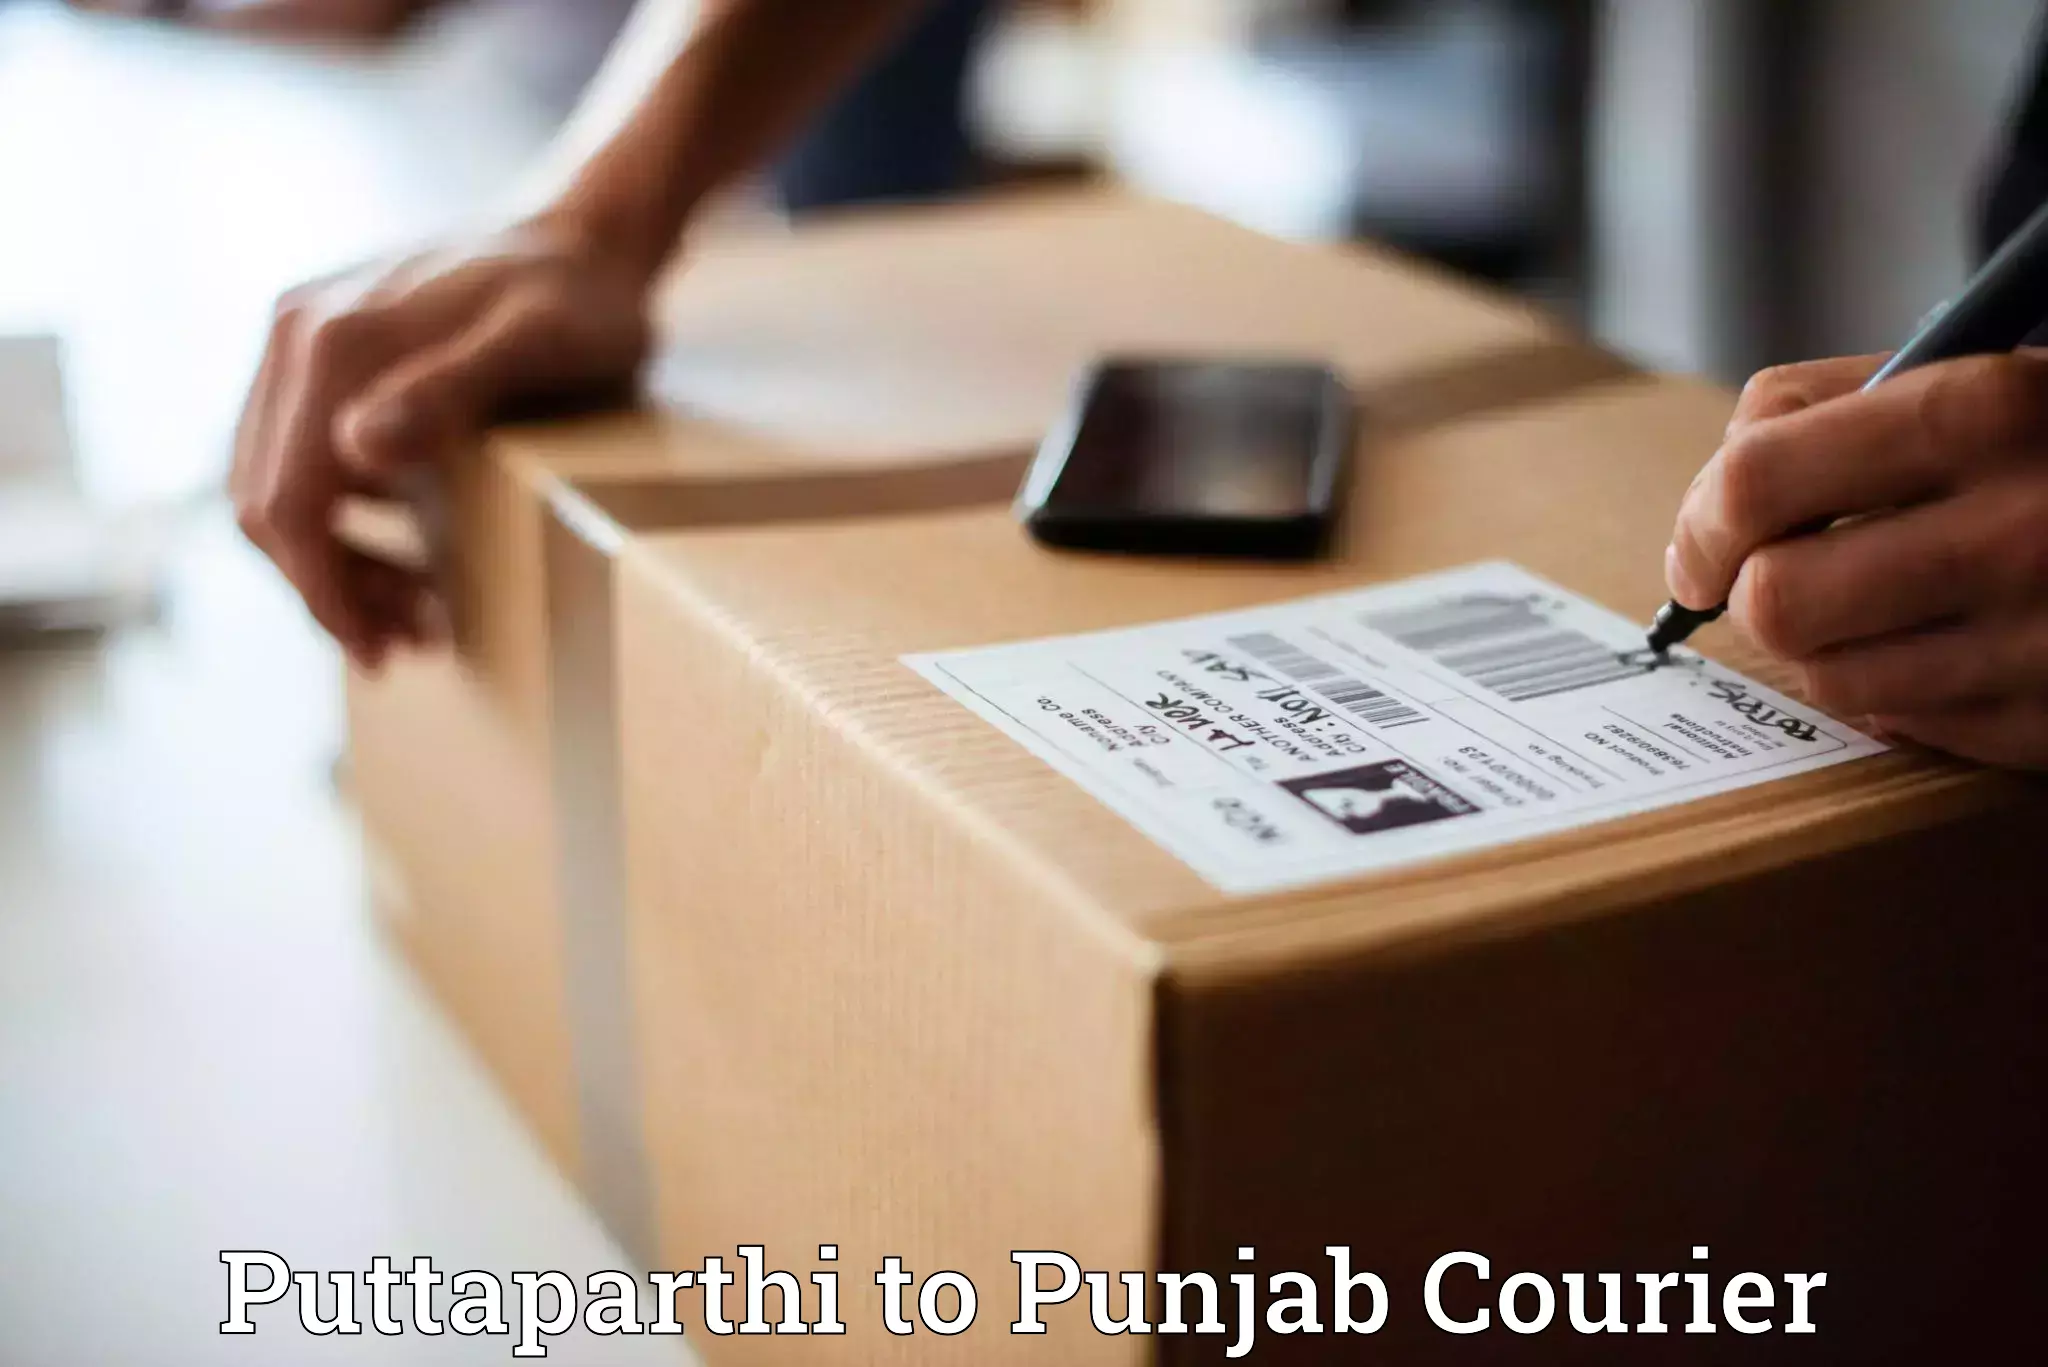 Reliable courier service Puttaparthi to Raikot